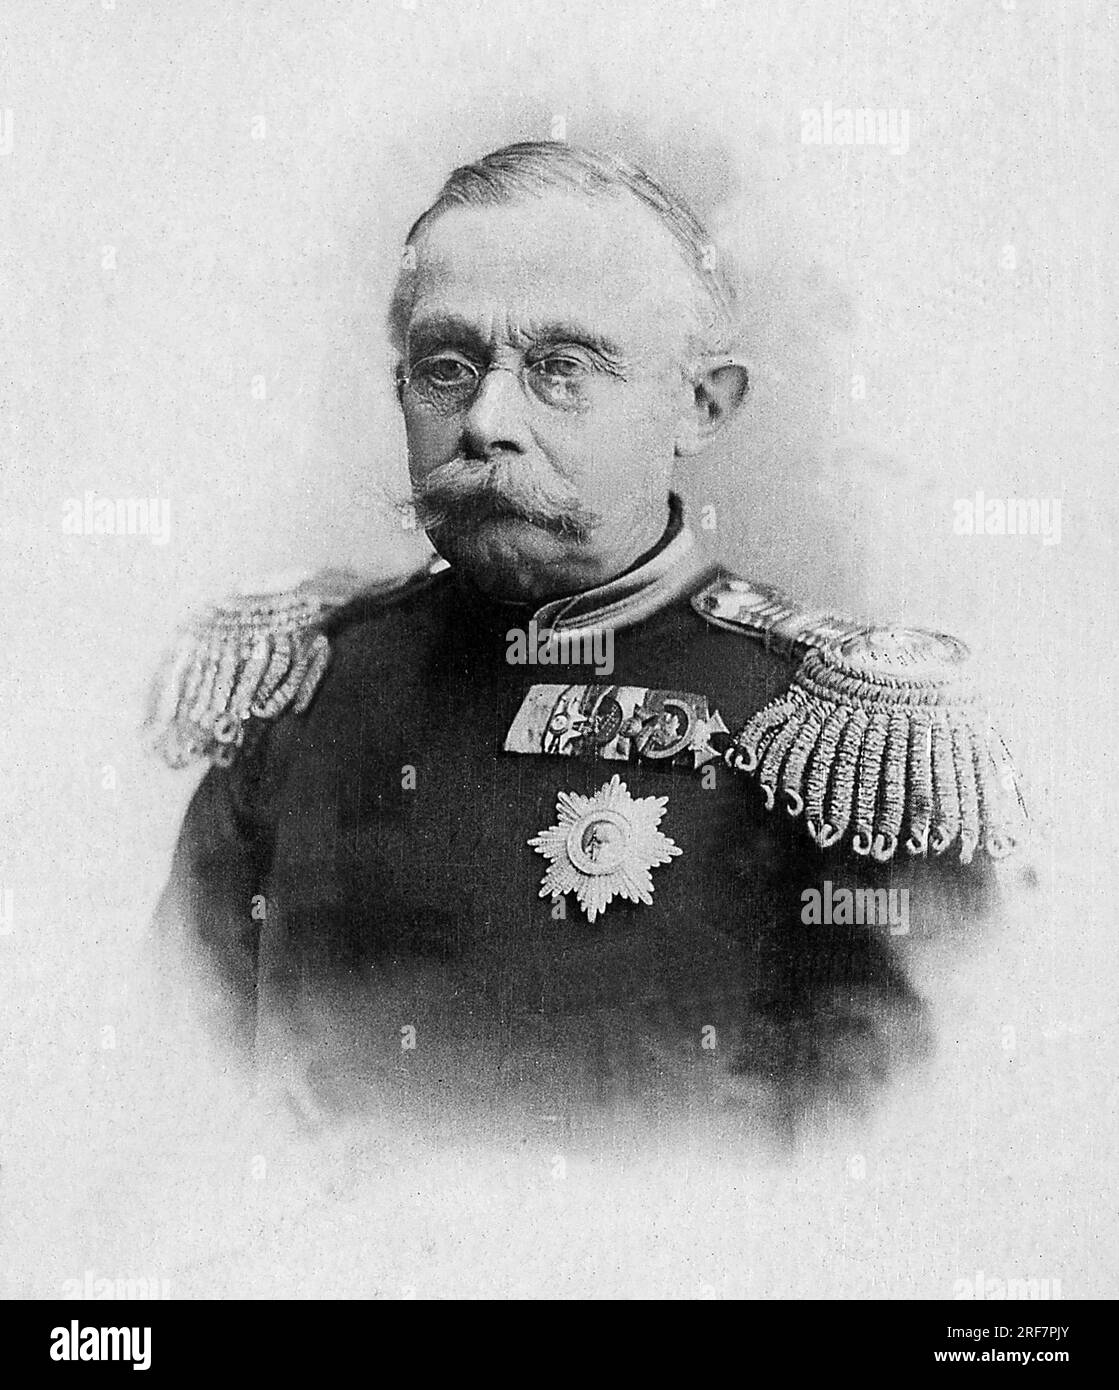 Portrait de Adolphe de Nassau, Grand Duc de Luxembourg (1817-1905), il fut le fondateur de la dynastie nationale regnante du Luxembourg, depuis son indépendance en 1890. Photographie, Debut du 20e siecle. Banque D'Images